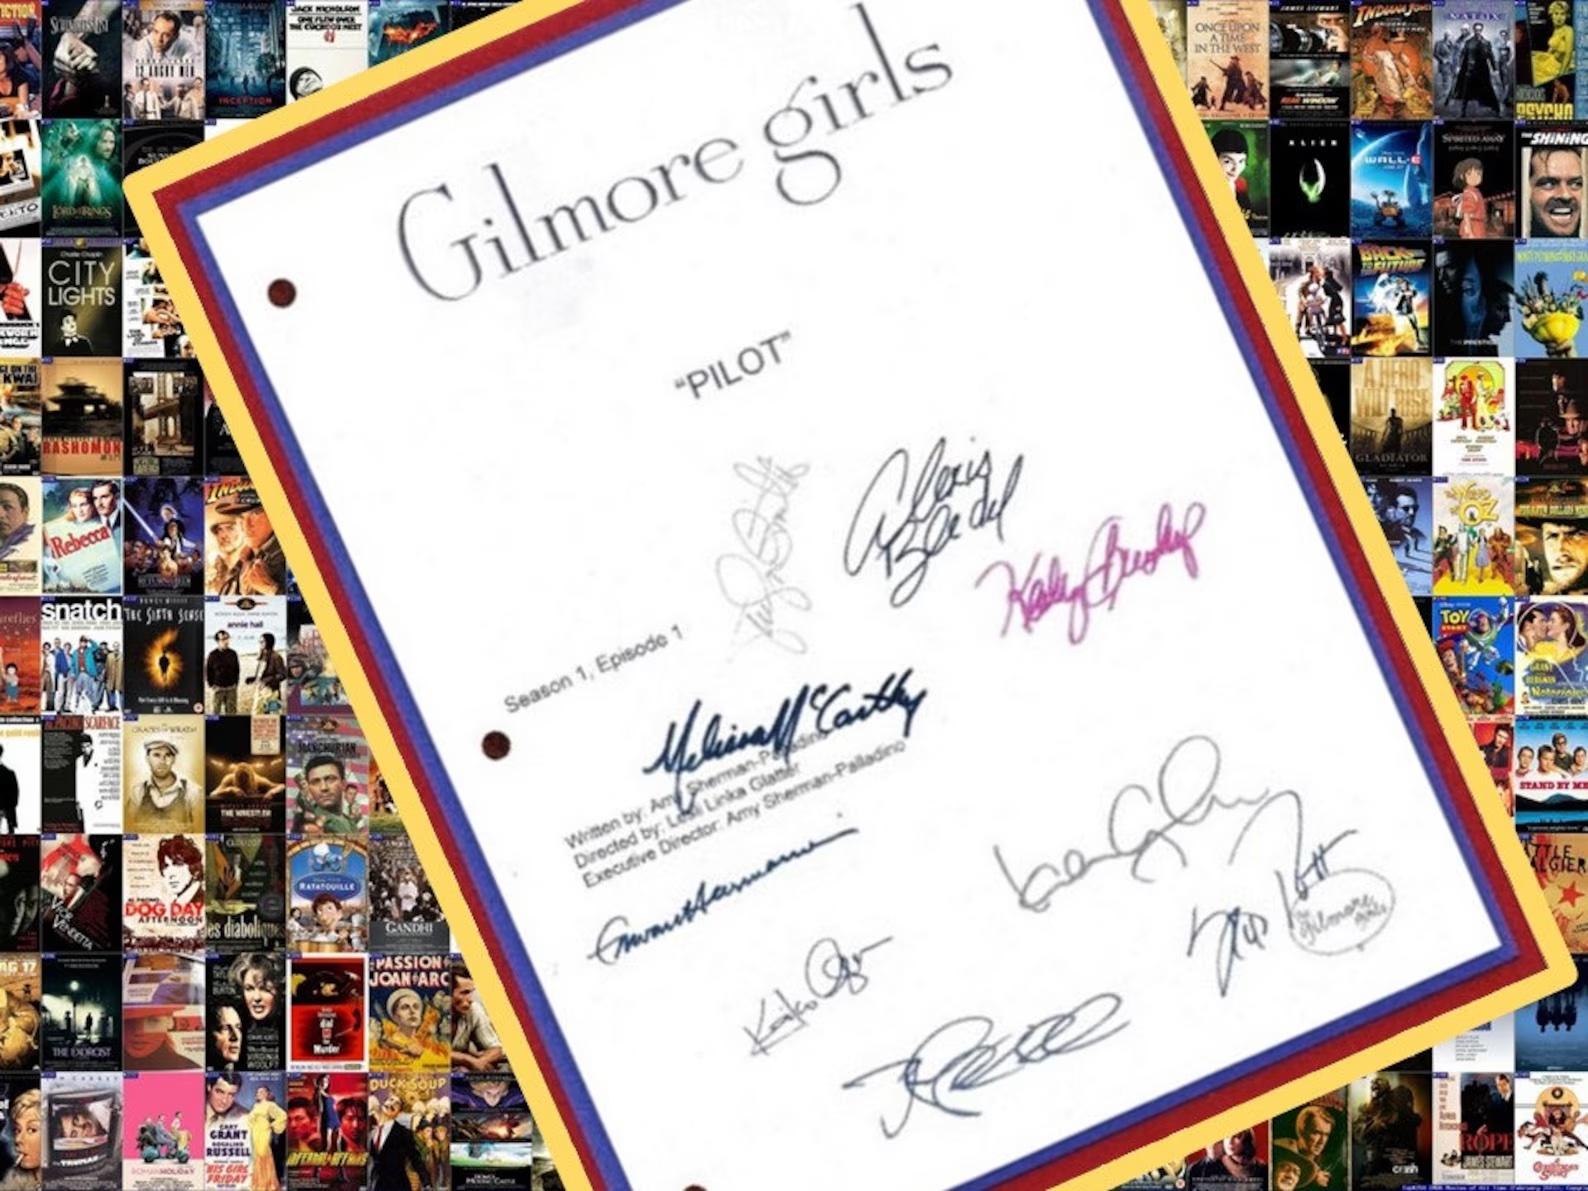 signierte Kopie des Drehbuchs für den Pilotfilm von Gilmore Girls